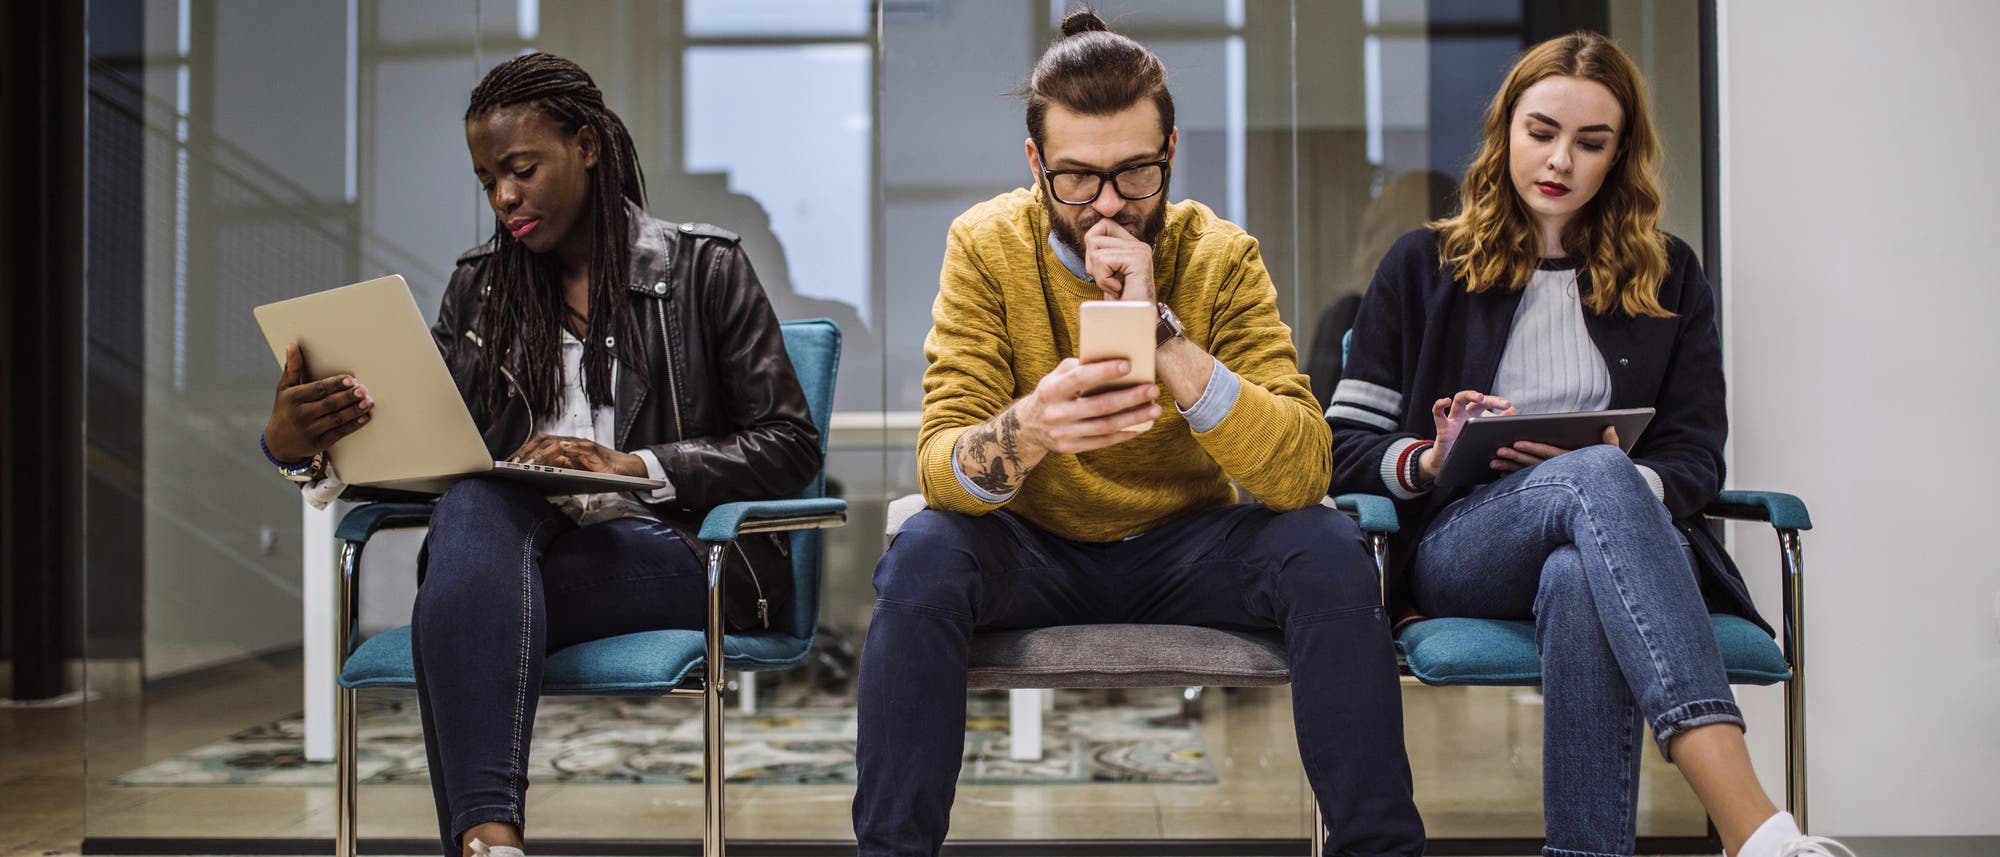 Drei Studierende sitzen auf Stühlen und beschäftigen sich mit Handy, Tablet oder Computer